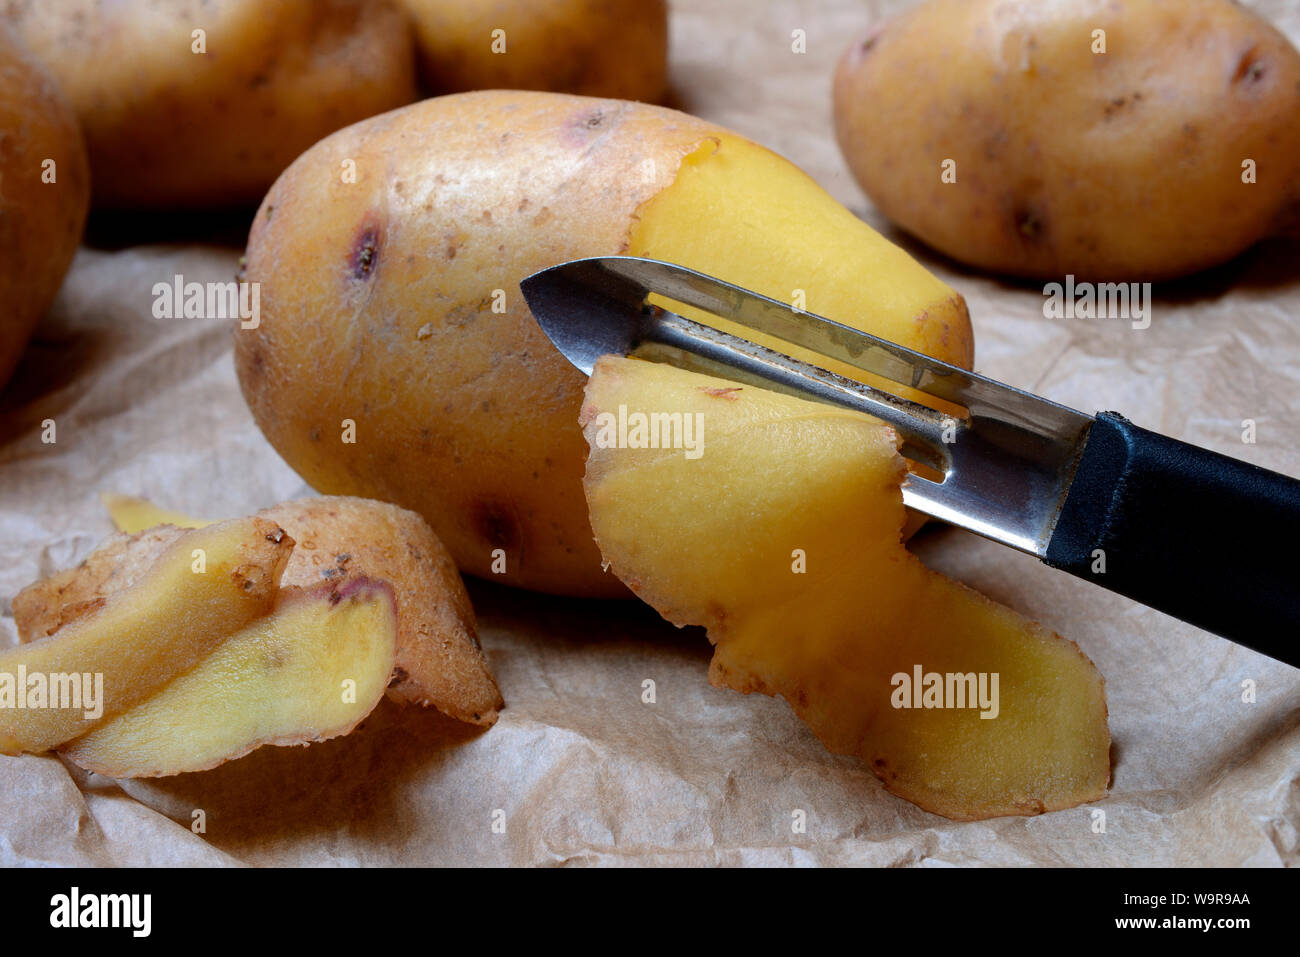 peeling potato with potato peeler Stock Photo